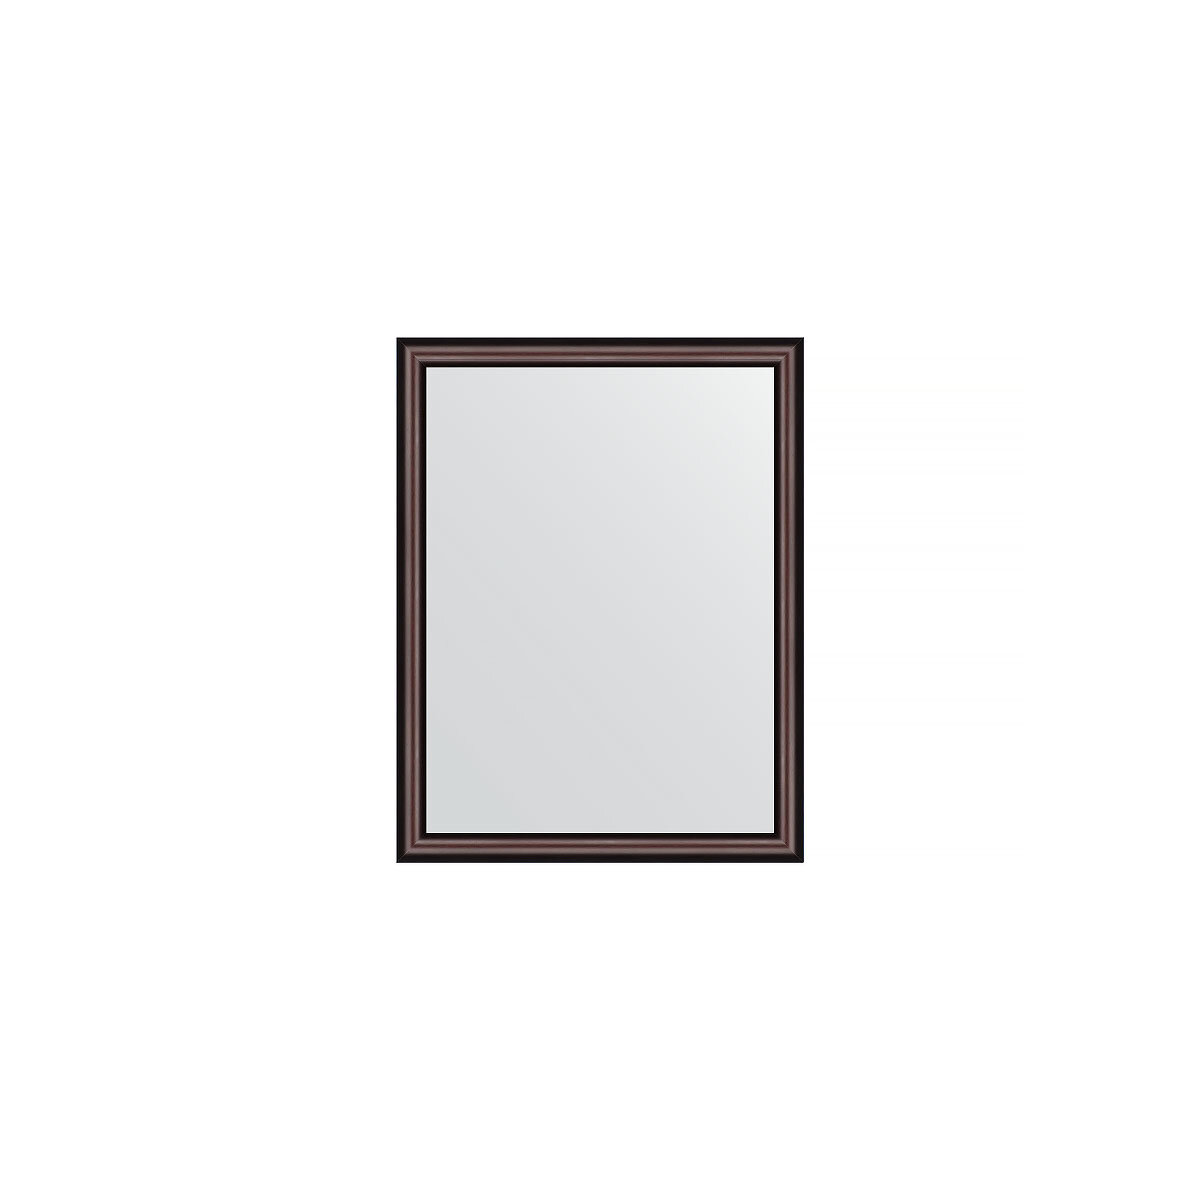 Зеркало настенное EVOFORM в багетной раме махагон, 34х44 см, для гостиной, прихожей, кабинета, спальни и ванной комнаты, BY 1325